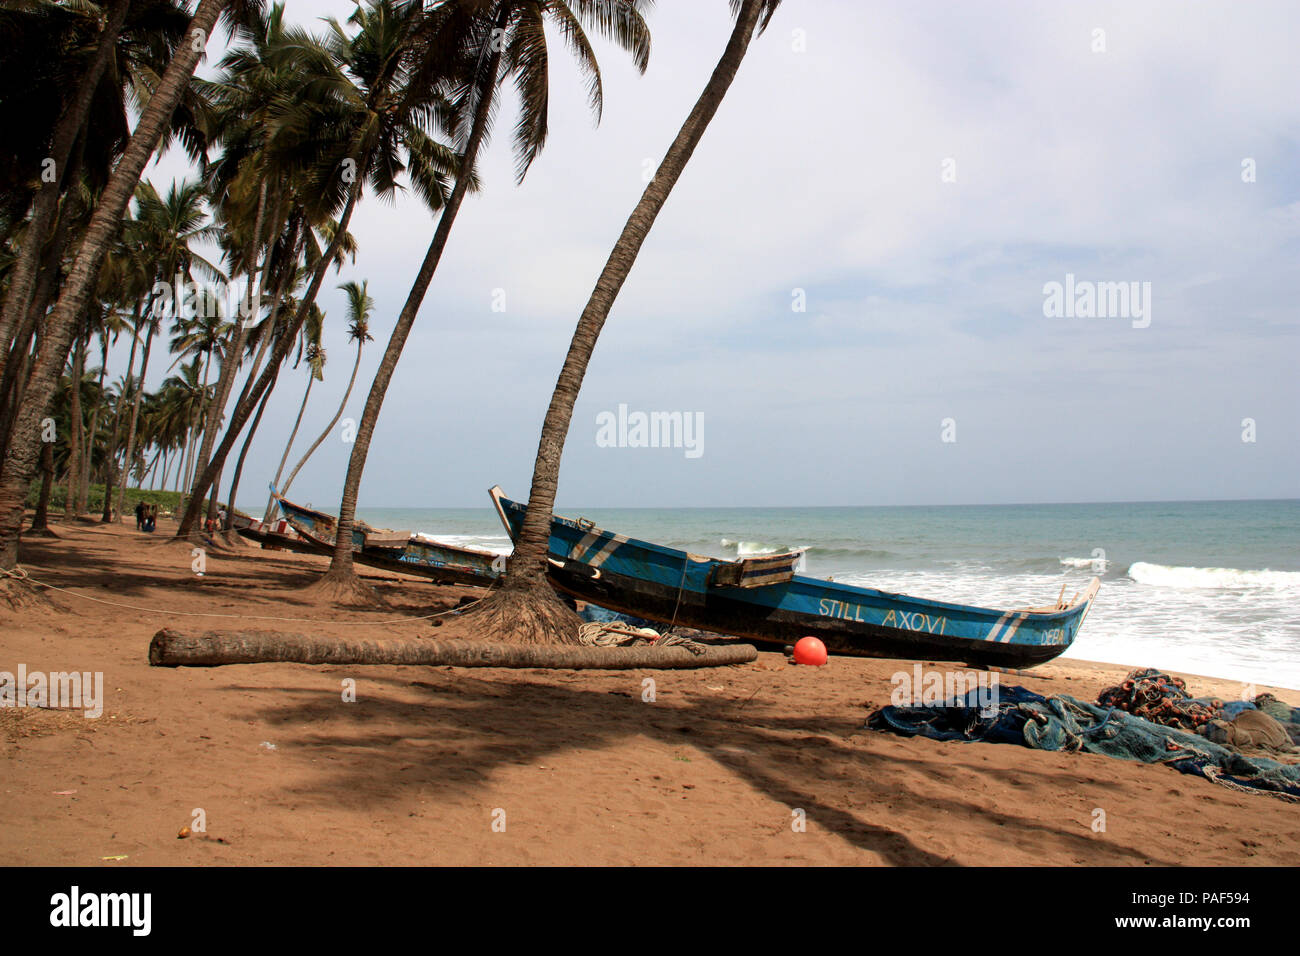 Fishing boat at a palm tree-lined beach near Cape Coast, Ghana Stock Photo